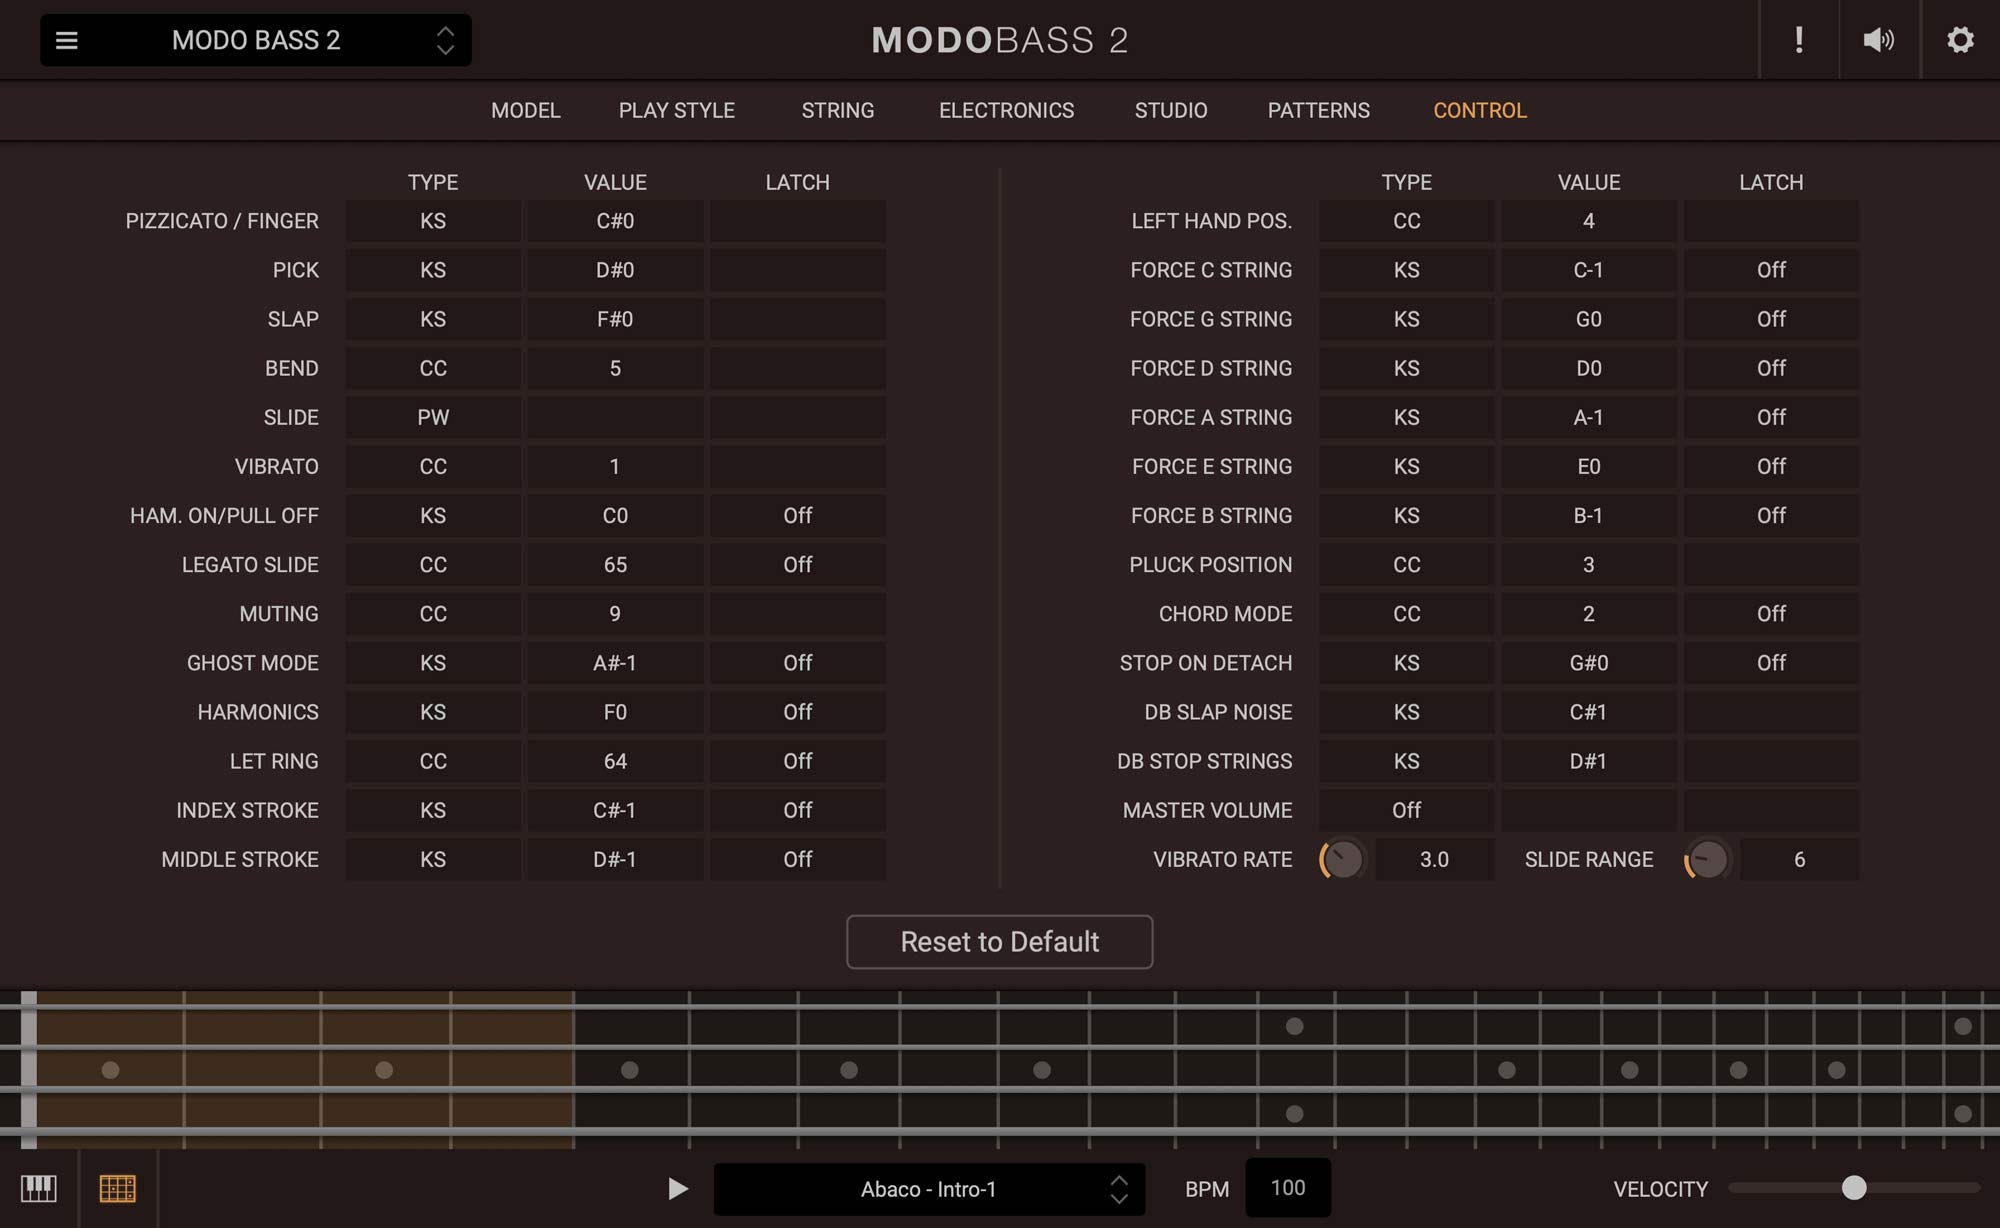 MODO BASS 2 - MIDI CONTROL